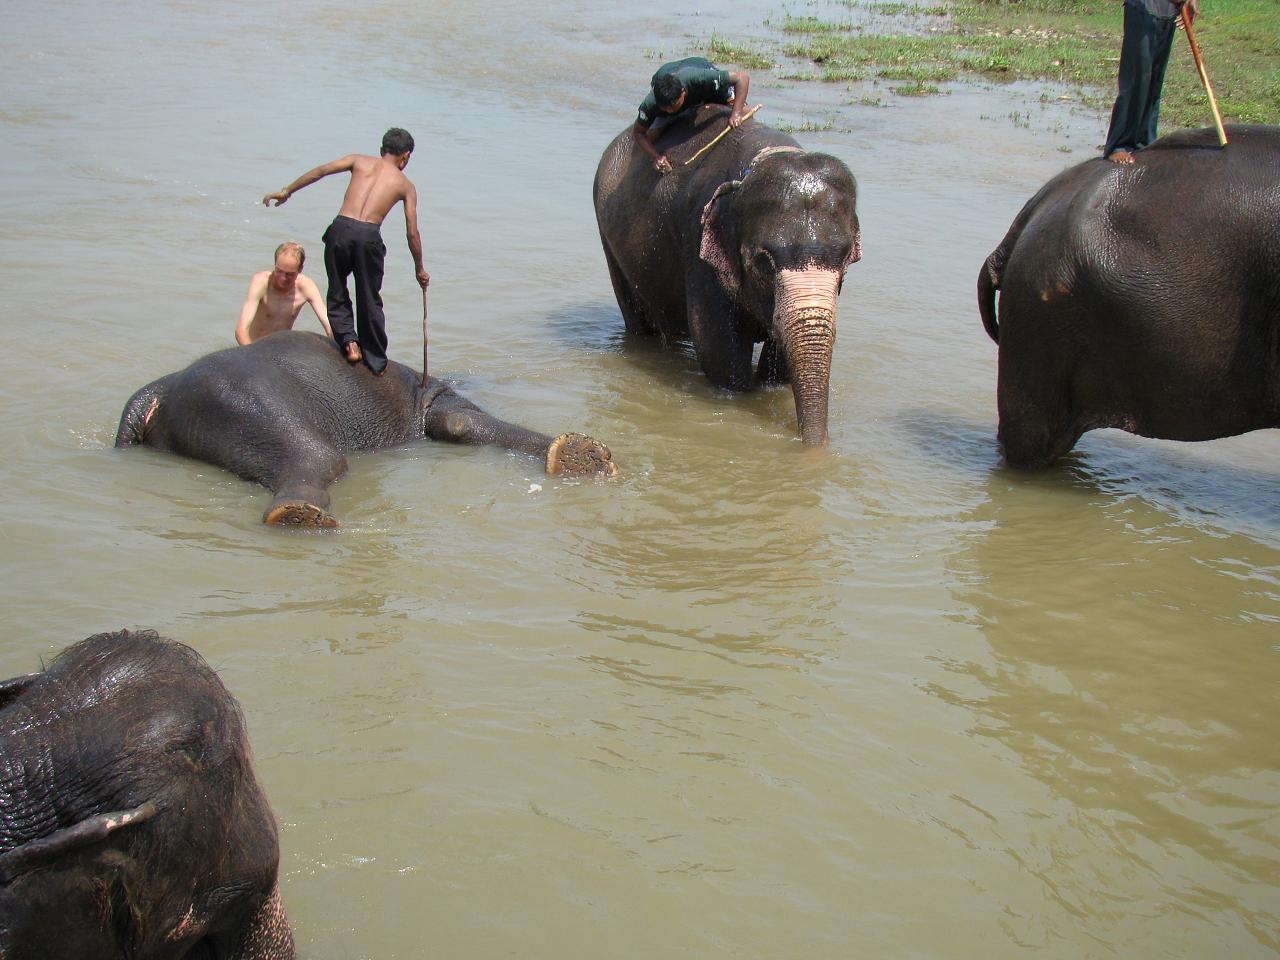 chitwan_elephants_bathing011.jpg